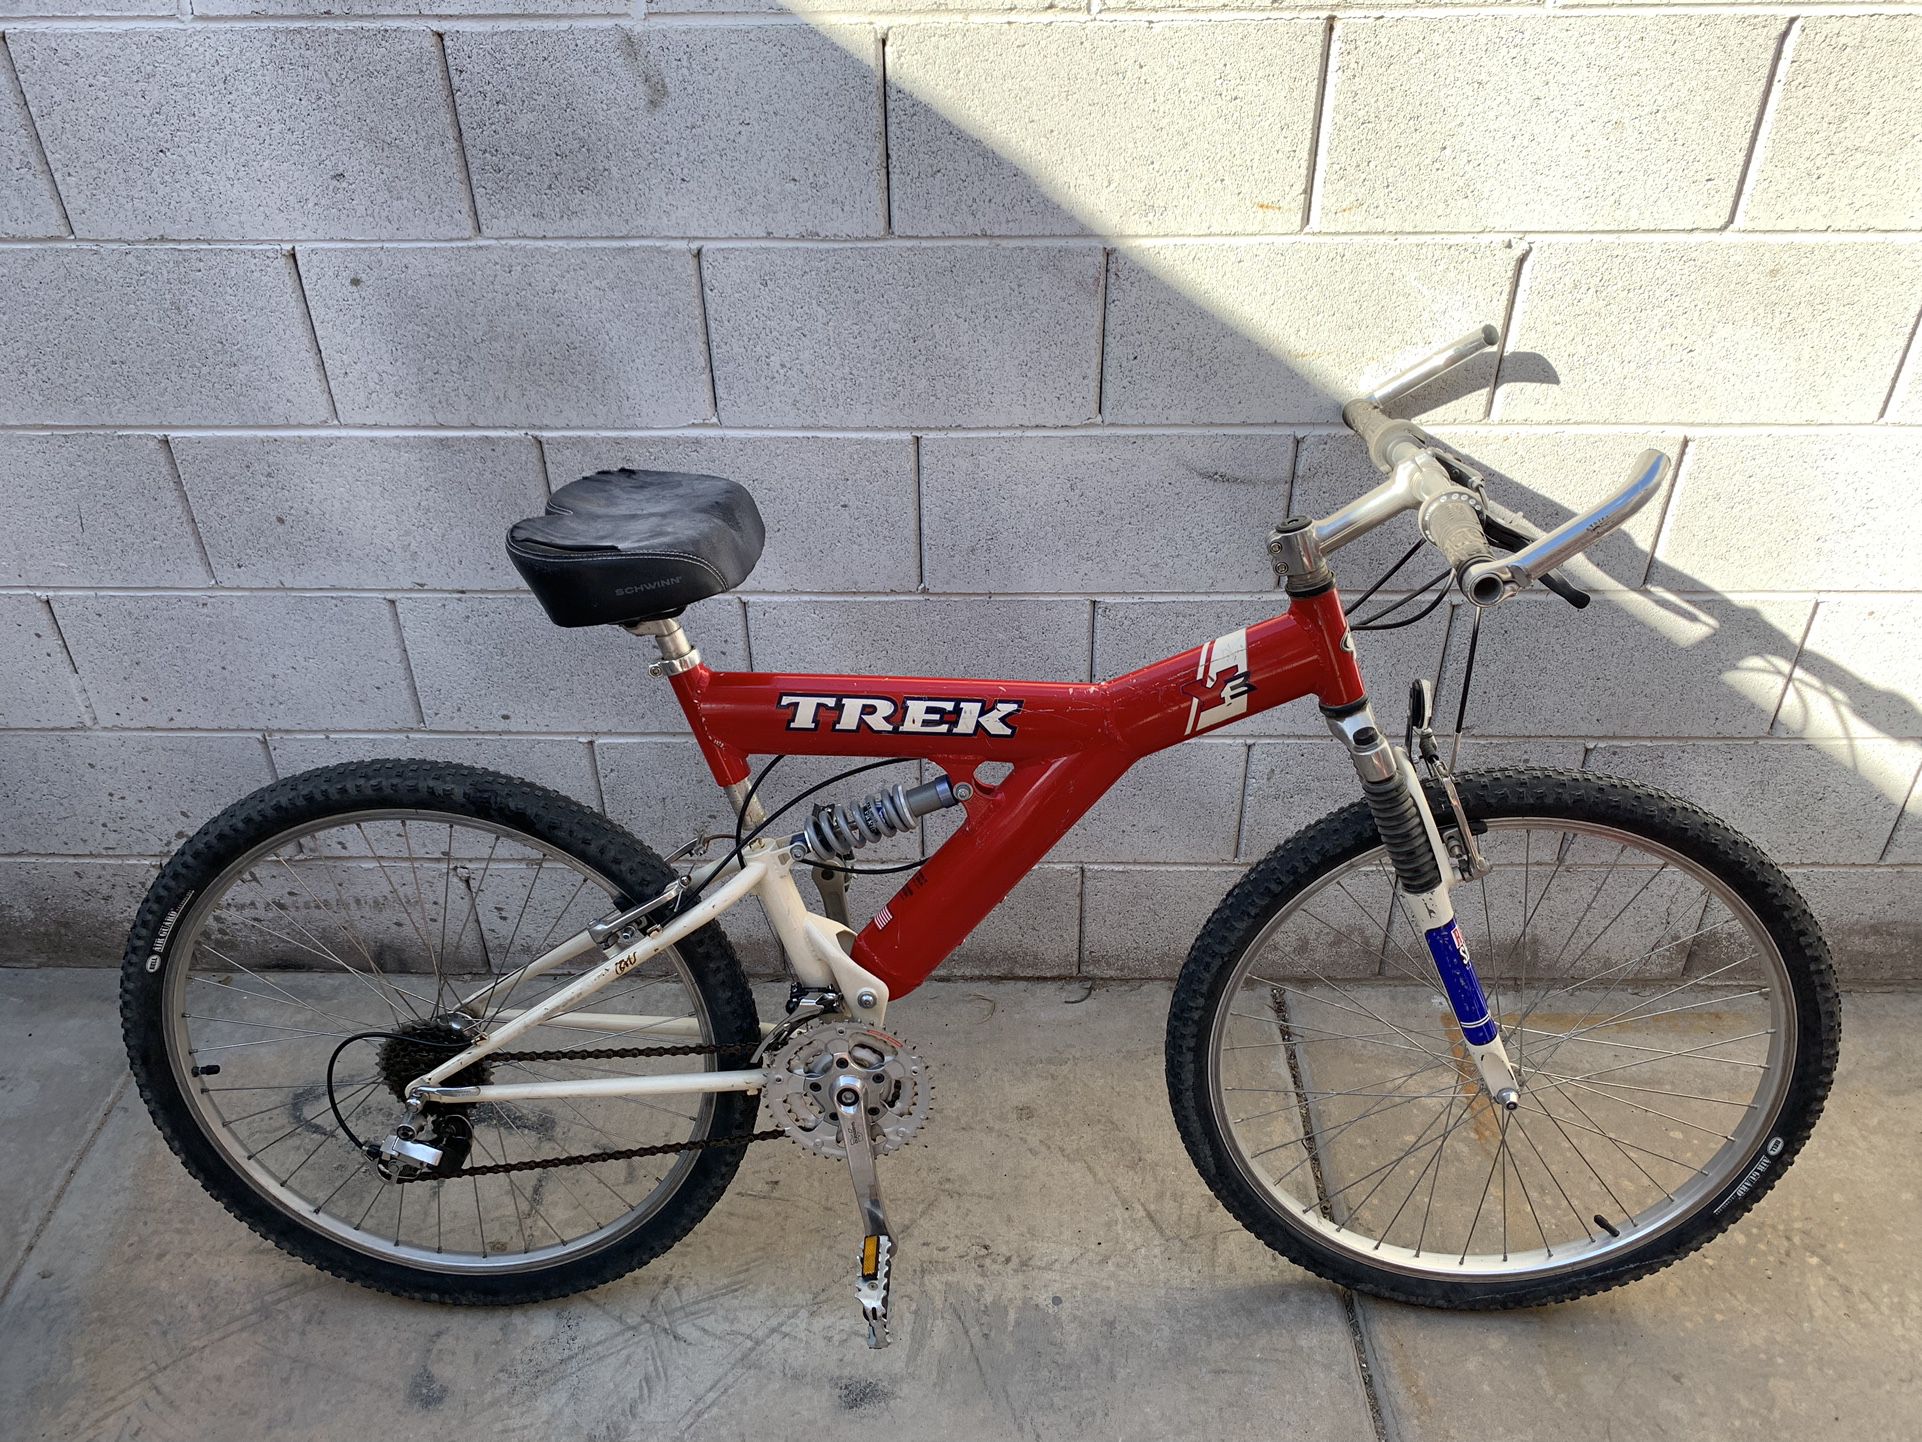 Adults TREK Bike Bicycle 26inch Rims Full Suspension 21 Speed New Inner Tubes Gears Work 